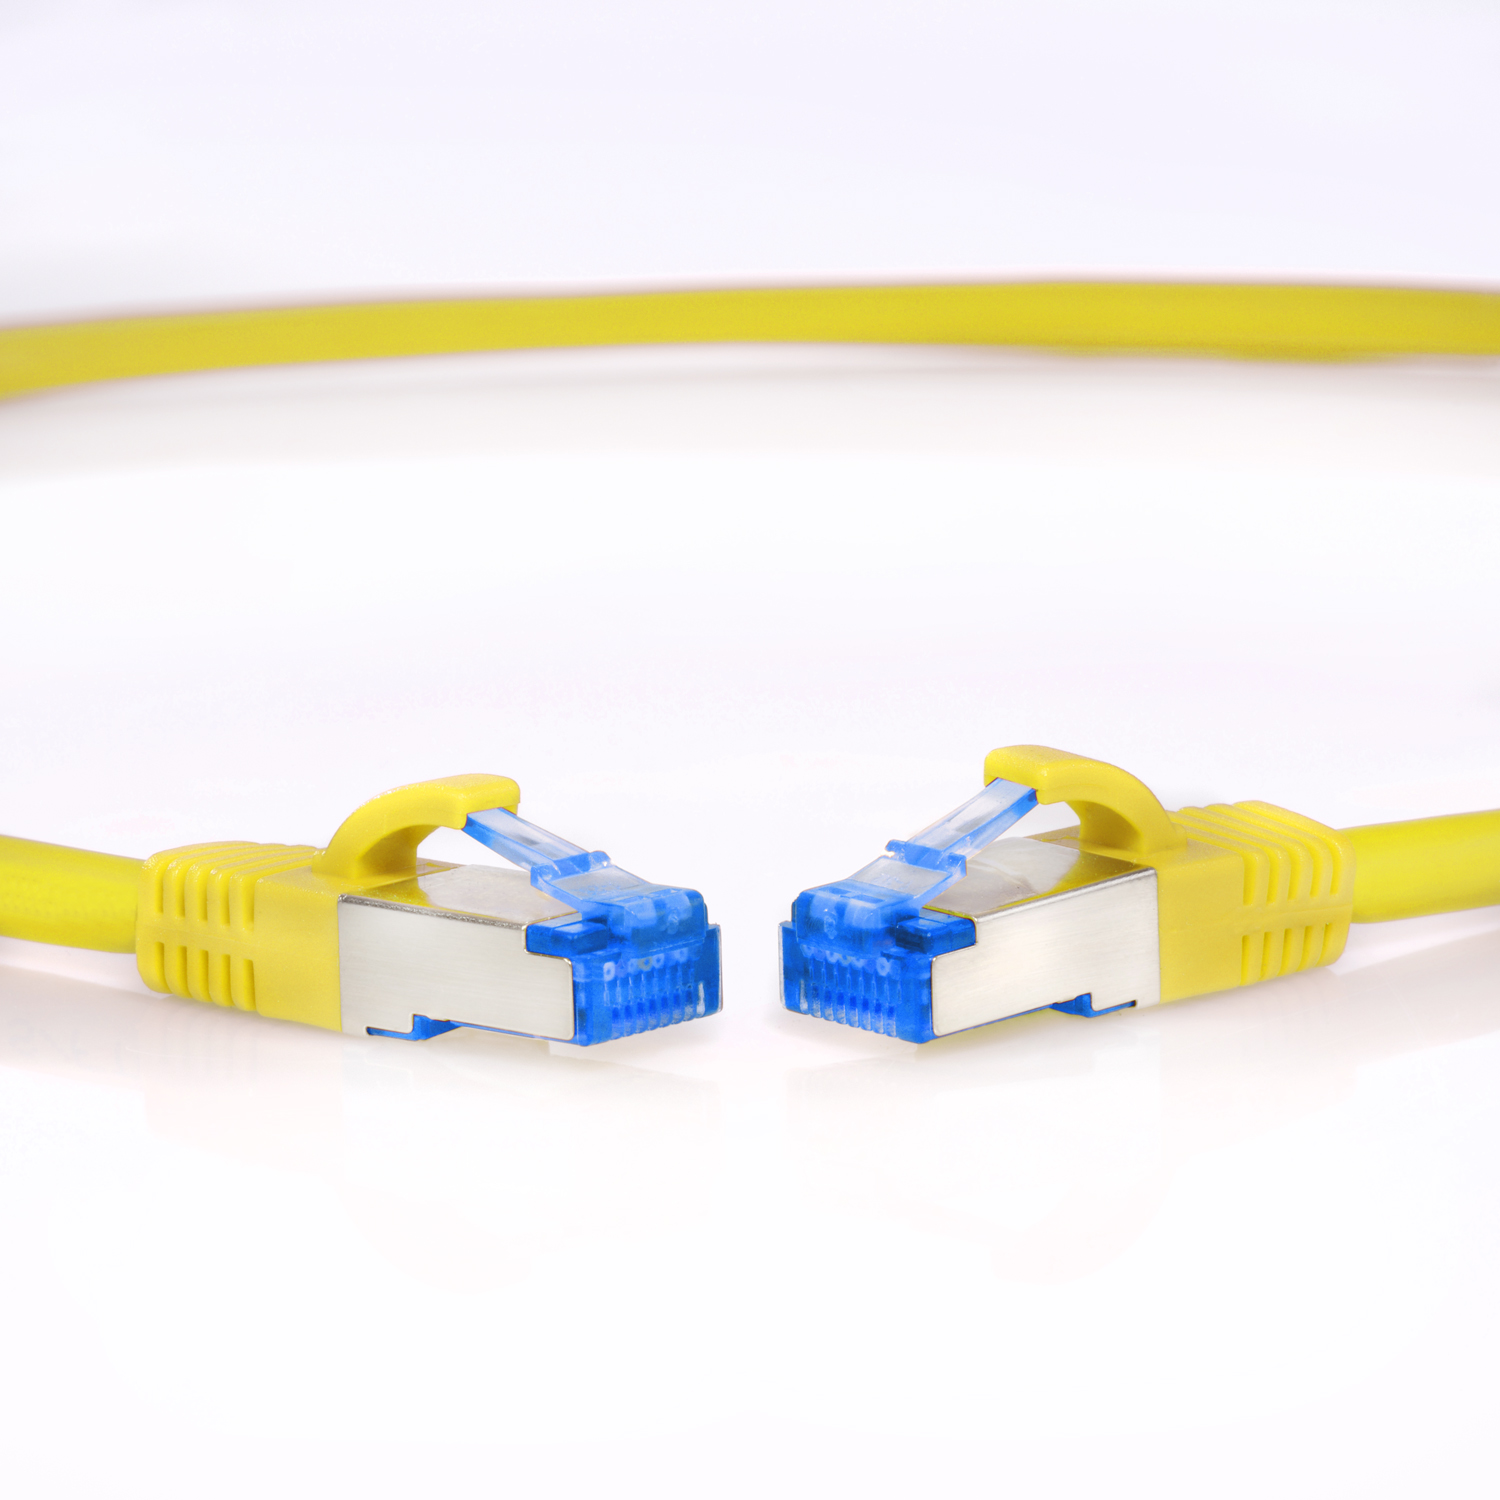 TPFNET 10m Patchkabel / Netzwerkkabel S/FTP 10 10GBit, m Netzwerkkabel, gelb